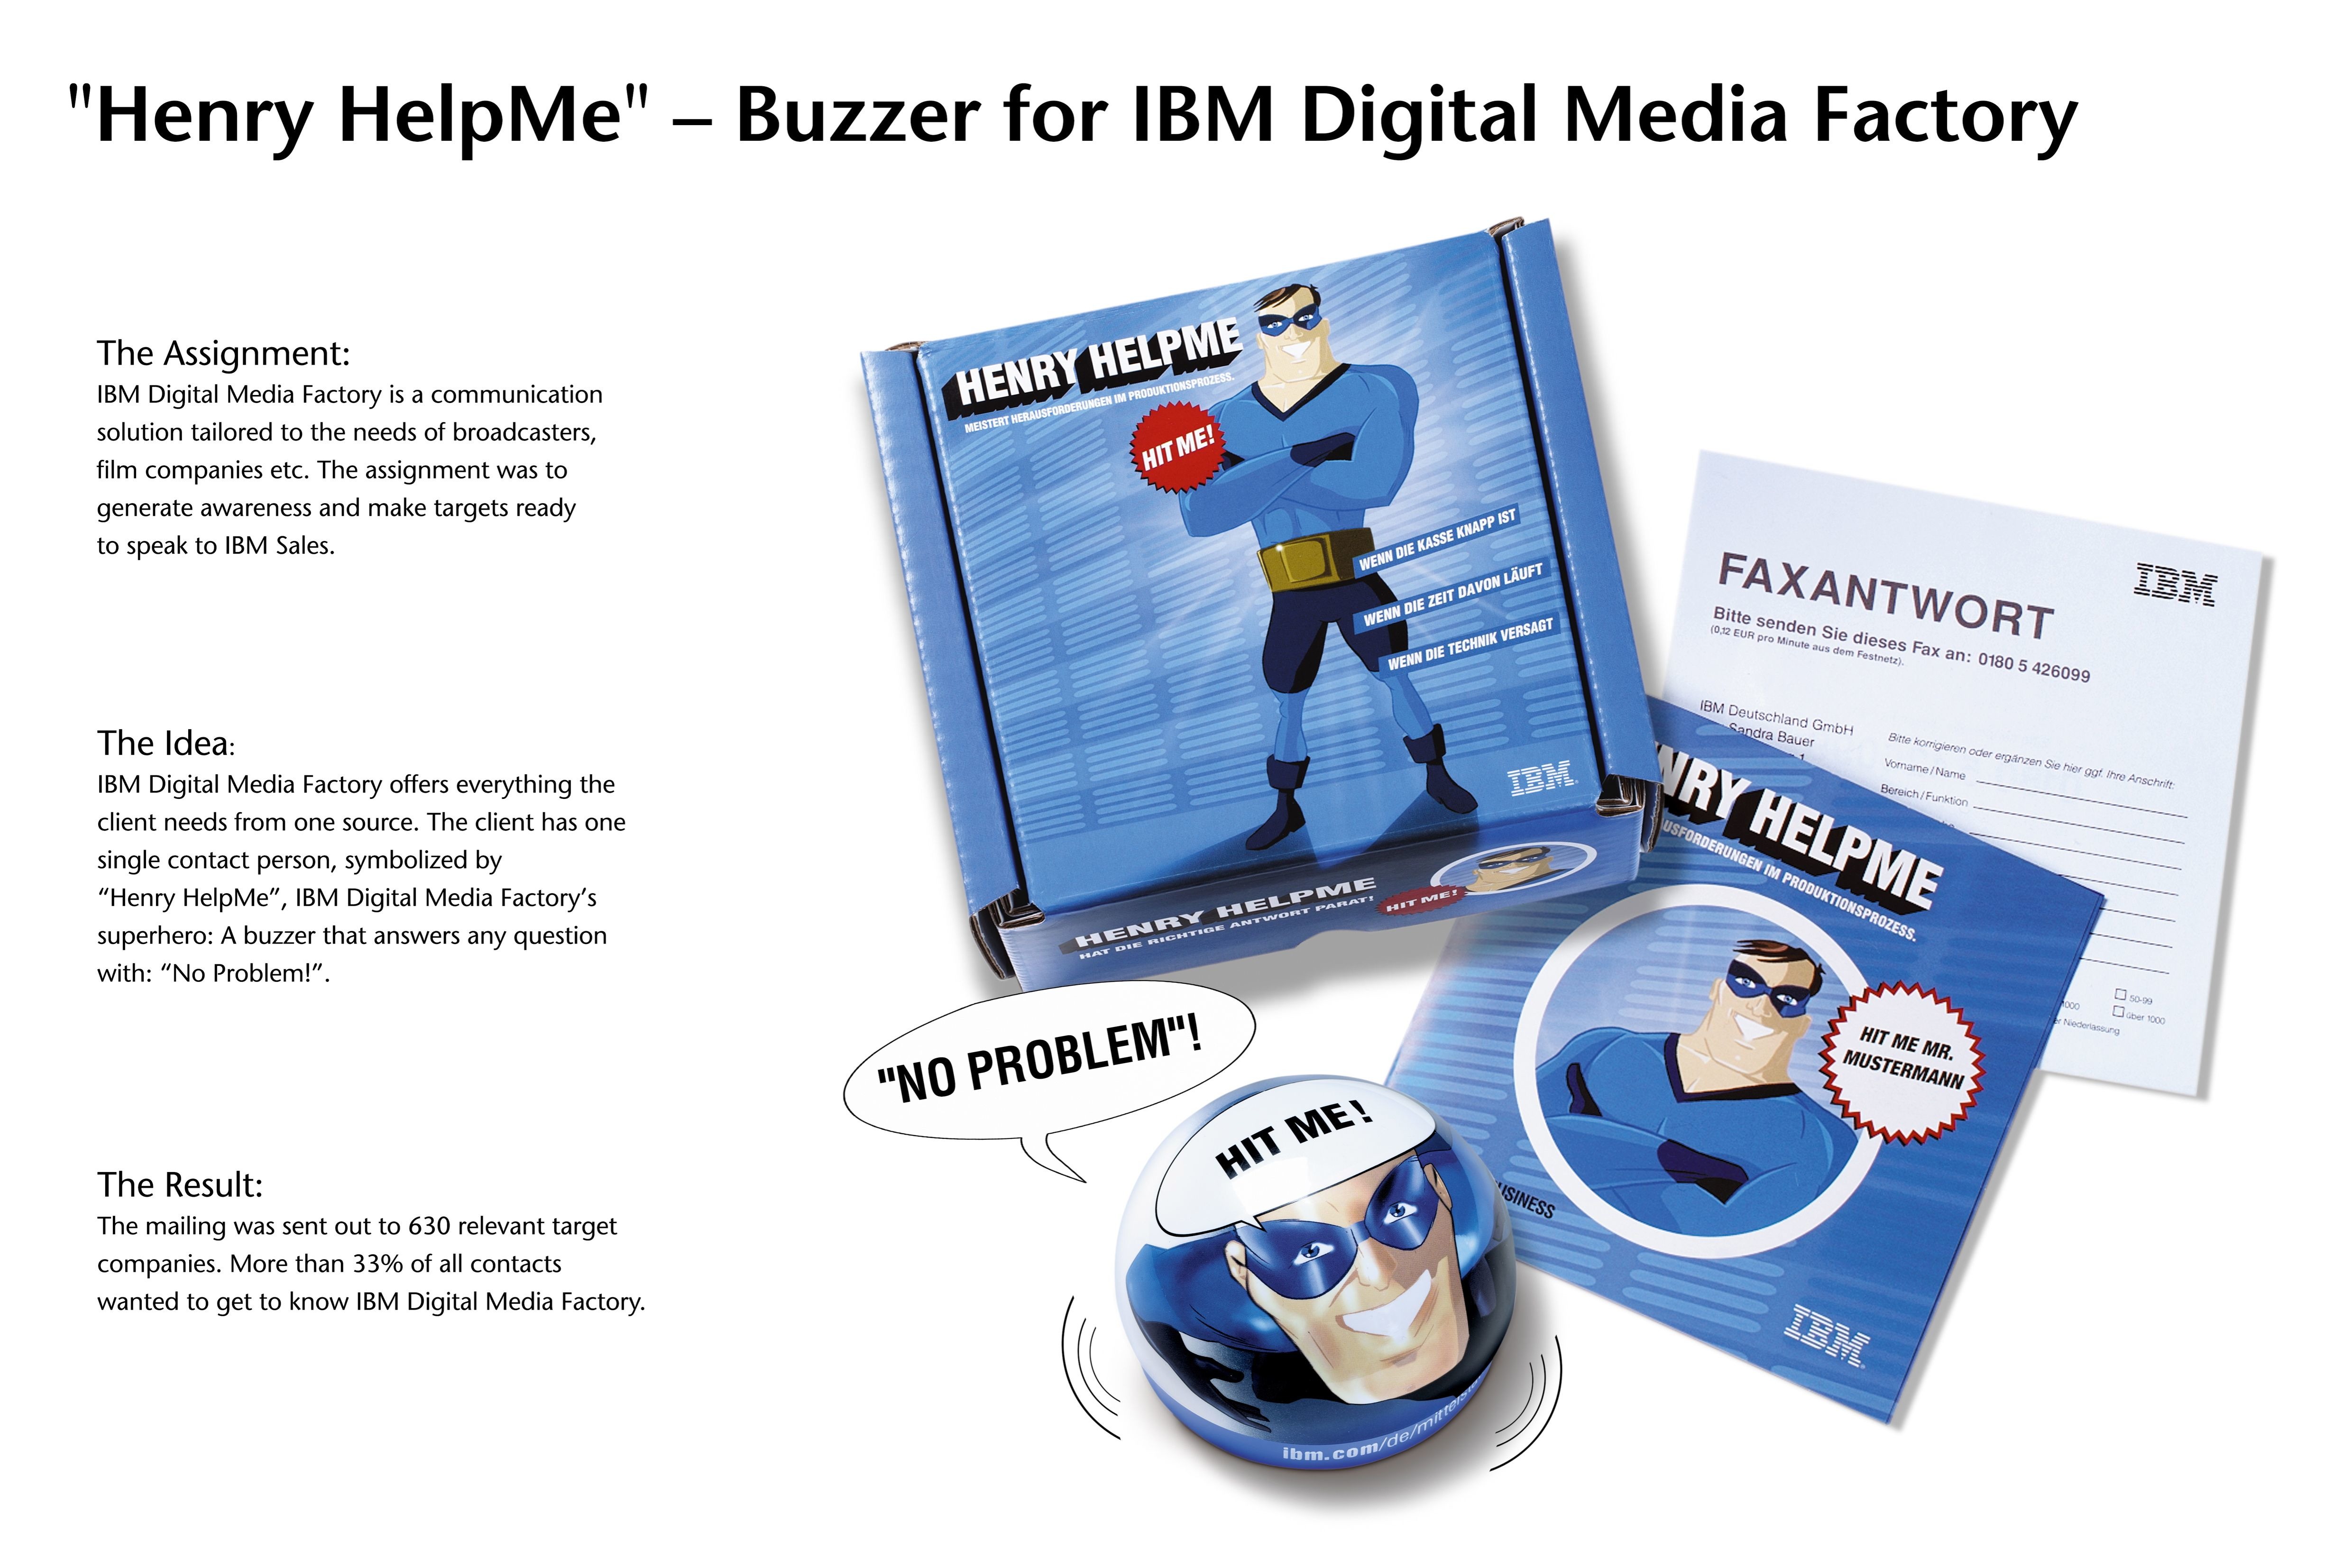 IBM DIGITAL MEDIA FACTORY